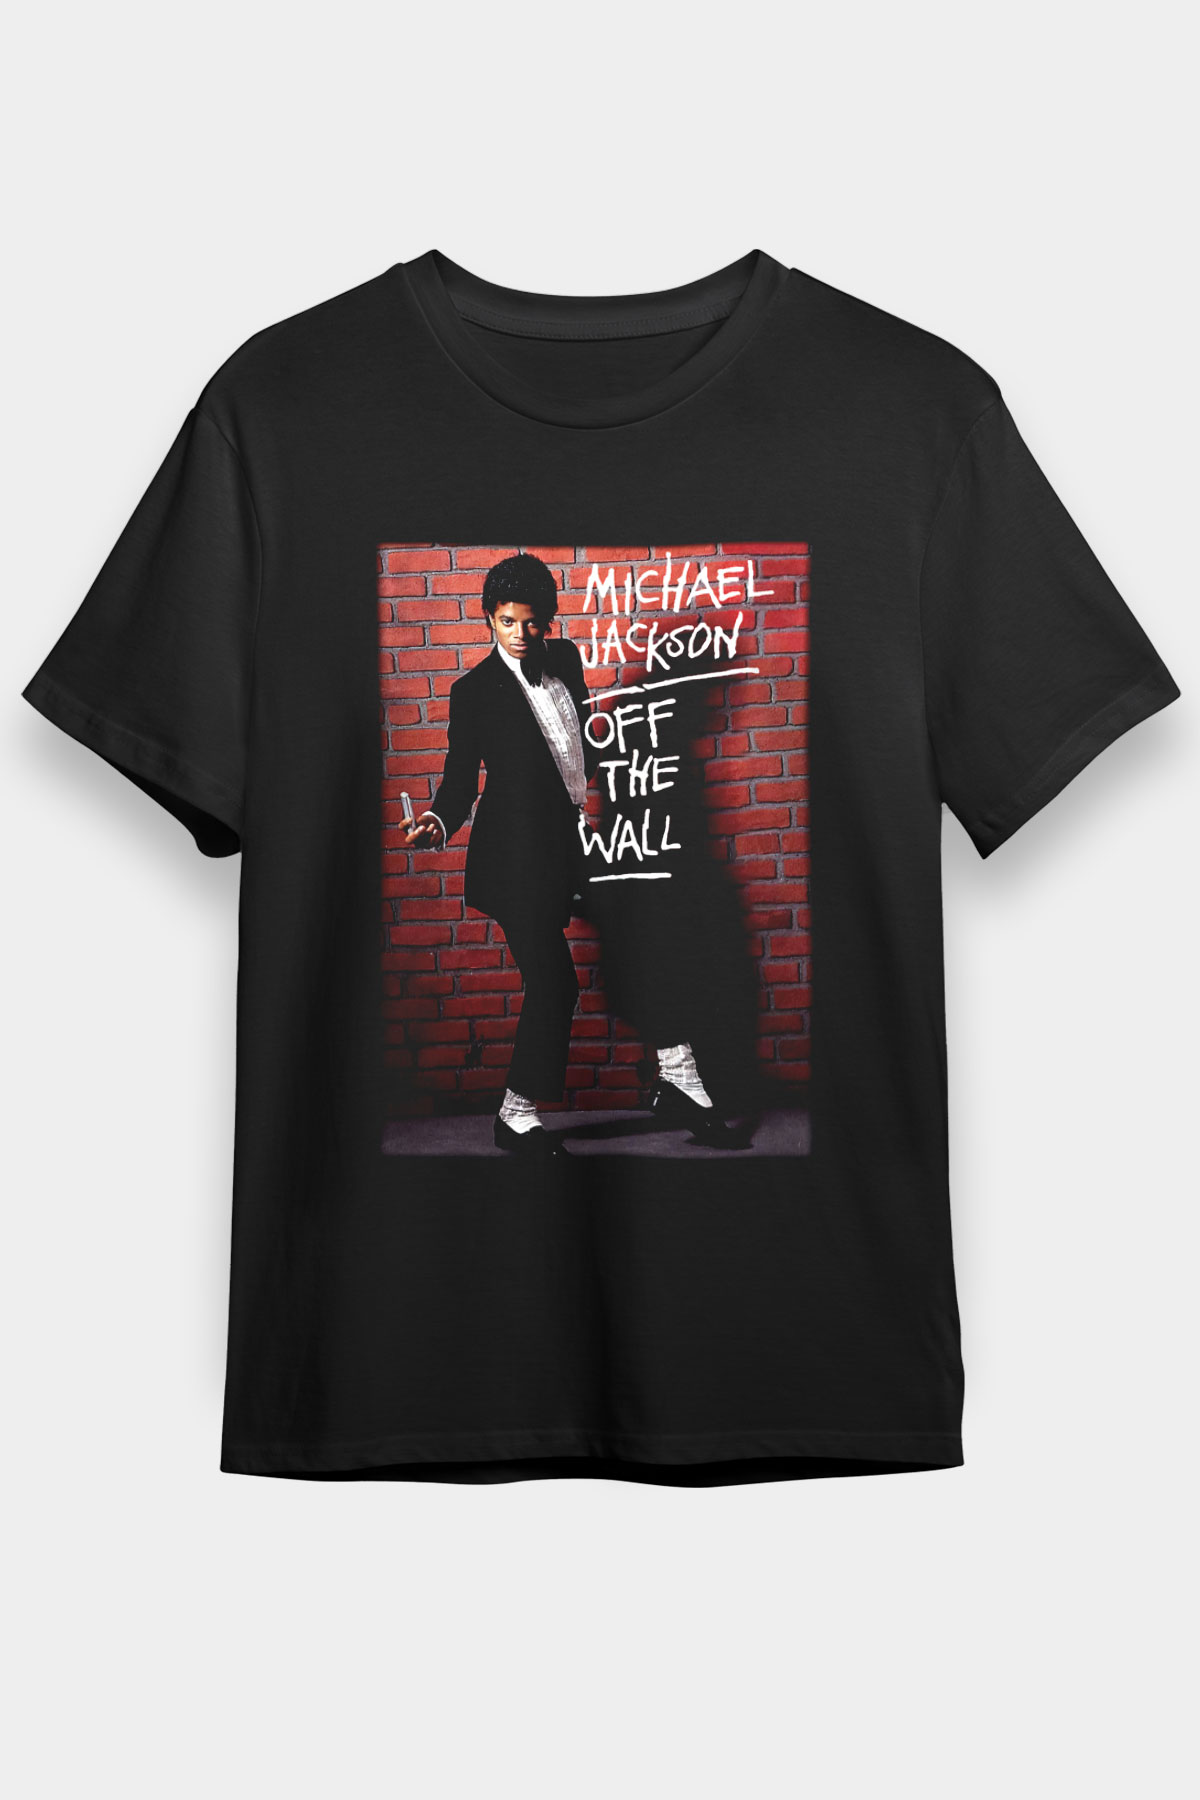 Michael Jackson T shirt,Pop Music Tshirt 10